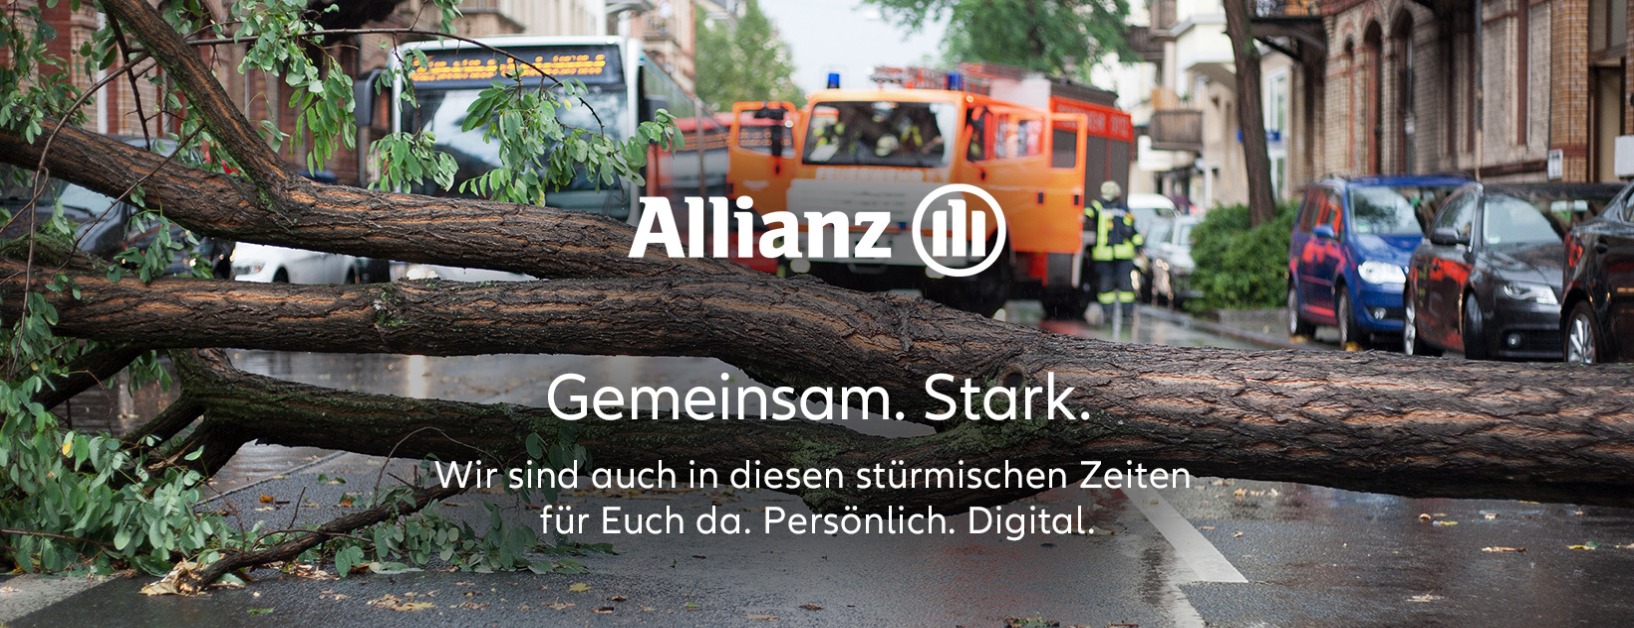 Allianz Versicherung Marco Enneking Damme - Empfang